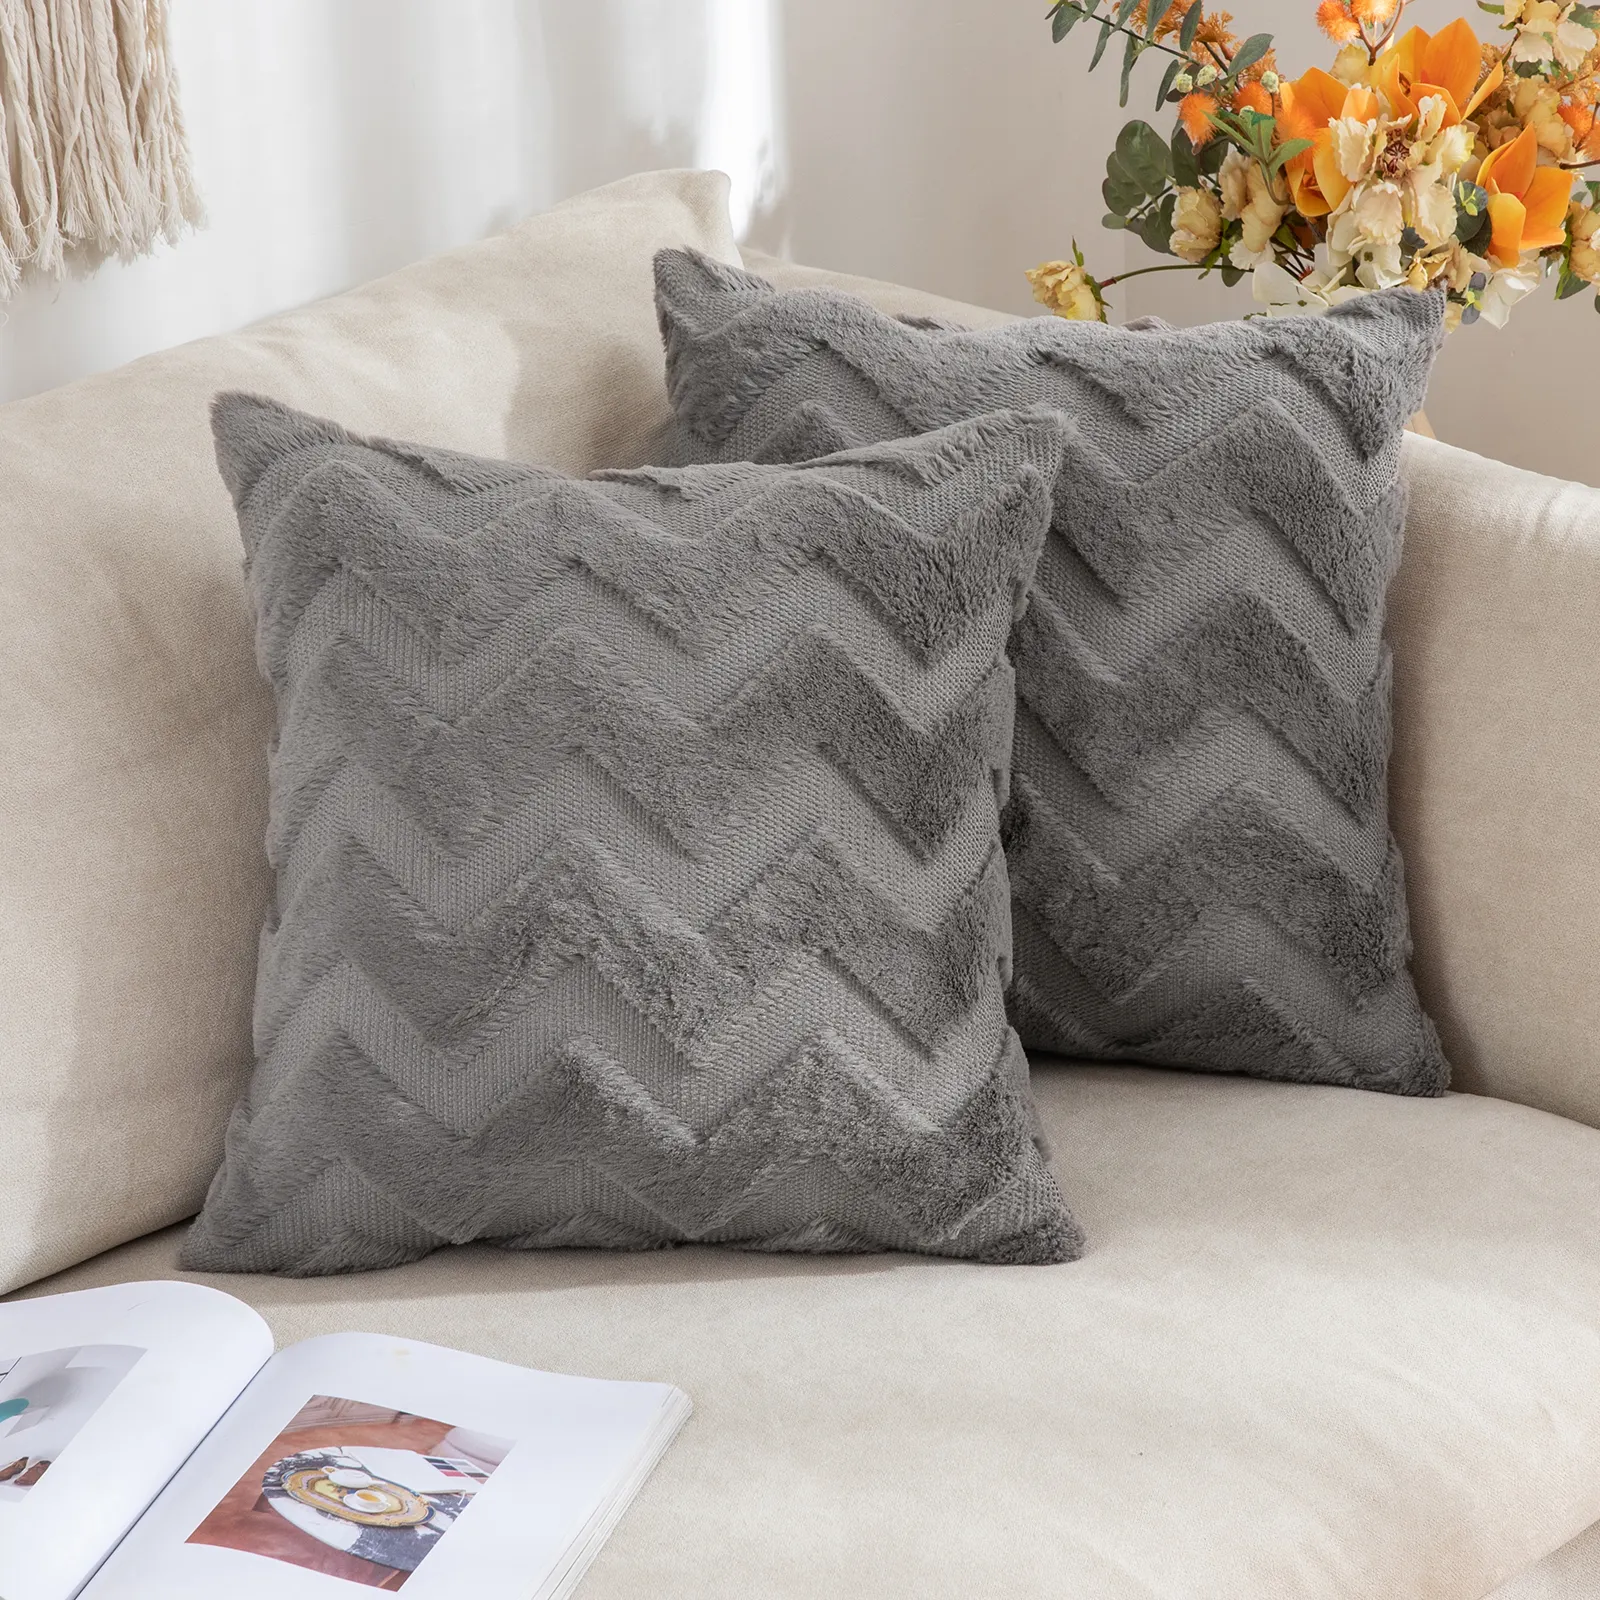 Promotion Benutzer definierte drei dimensionale Kunst pelz Kissen Home Sofa Weiche Plüsch Wellige Getreide Luxus Kissen bezug